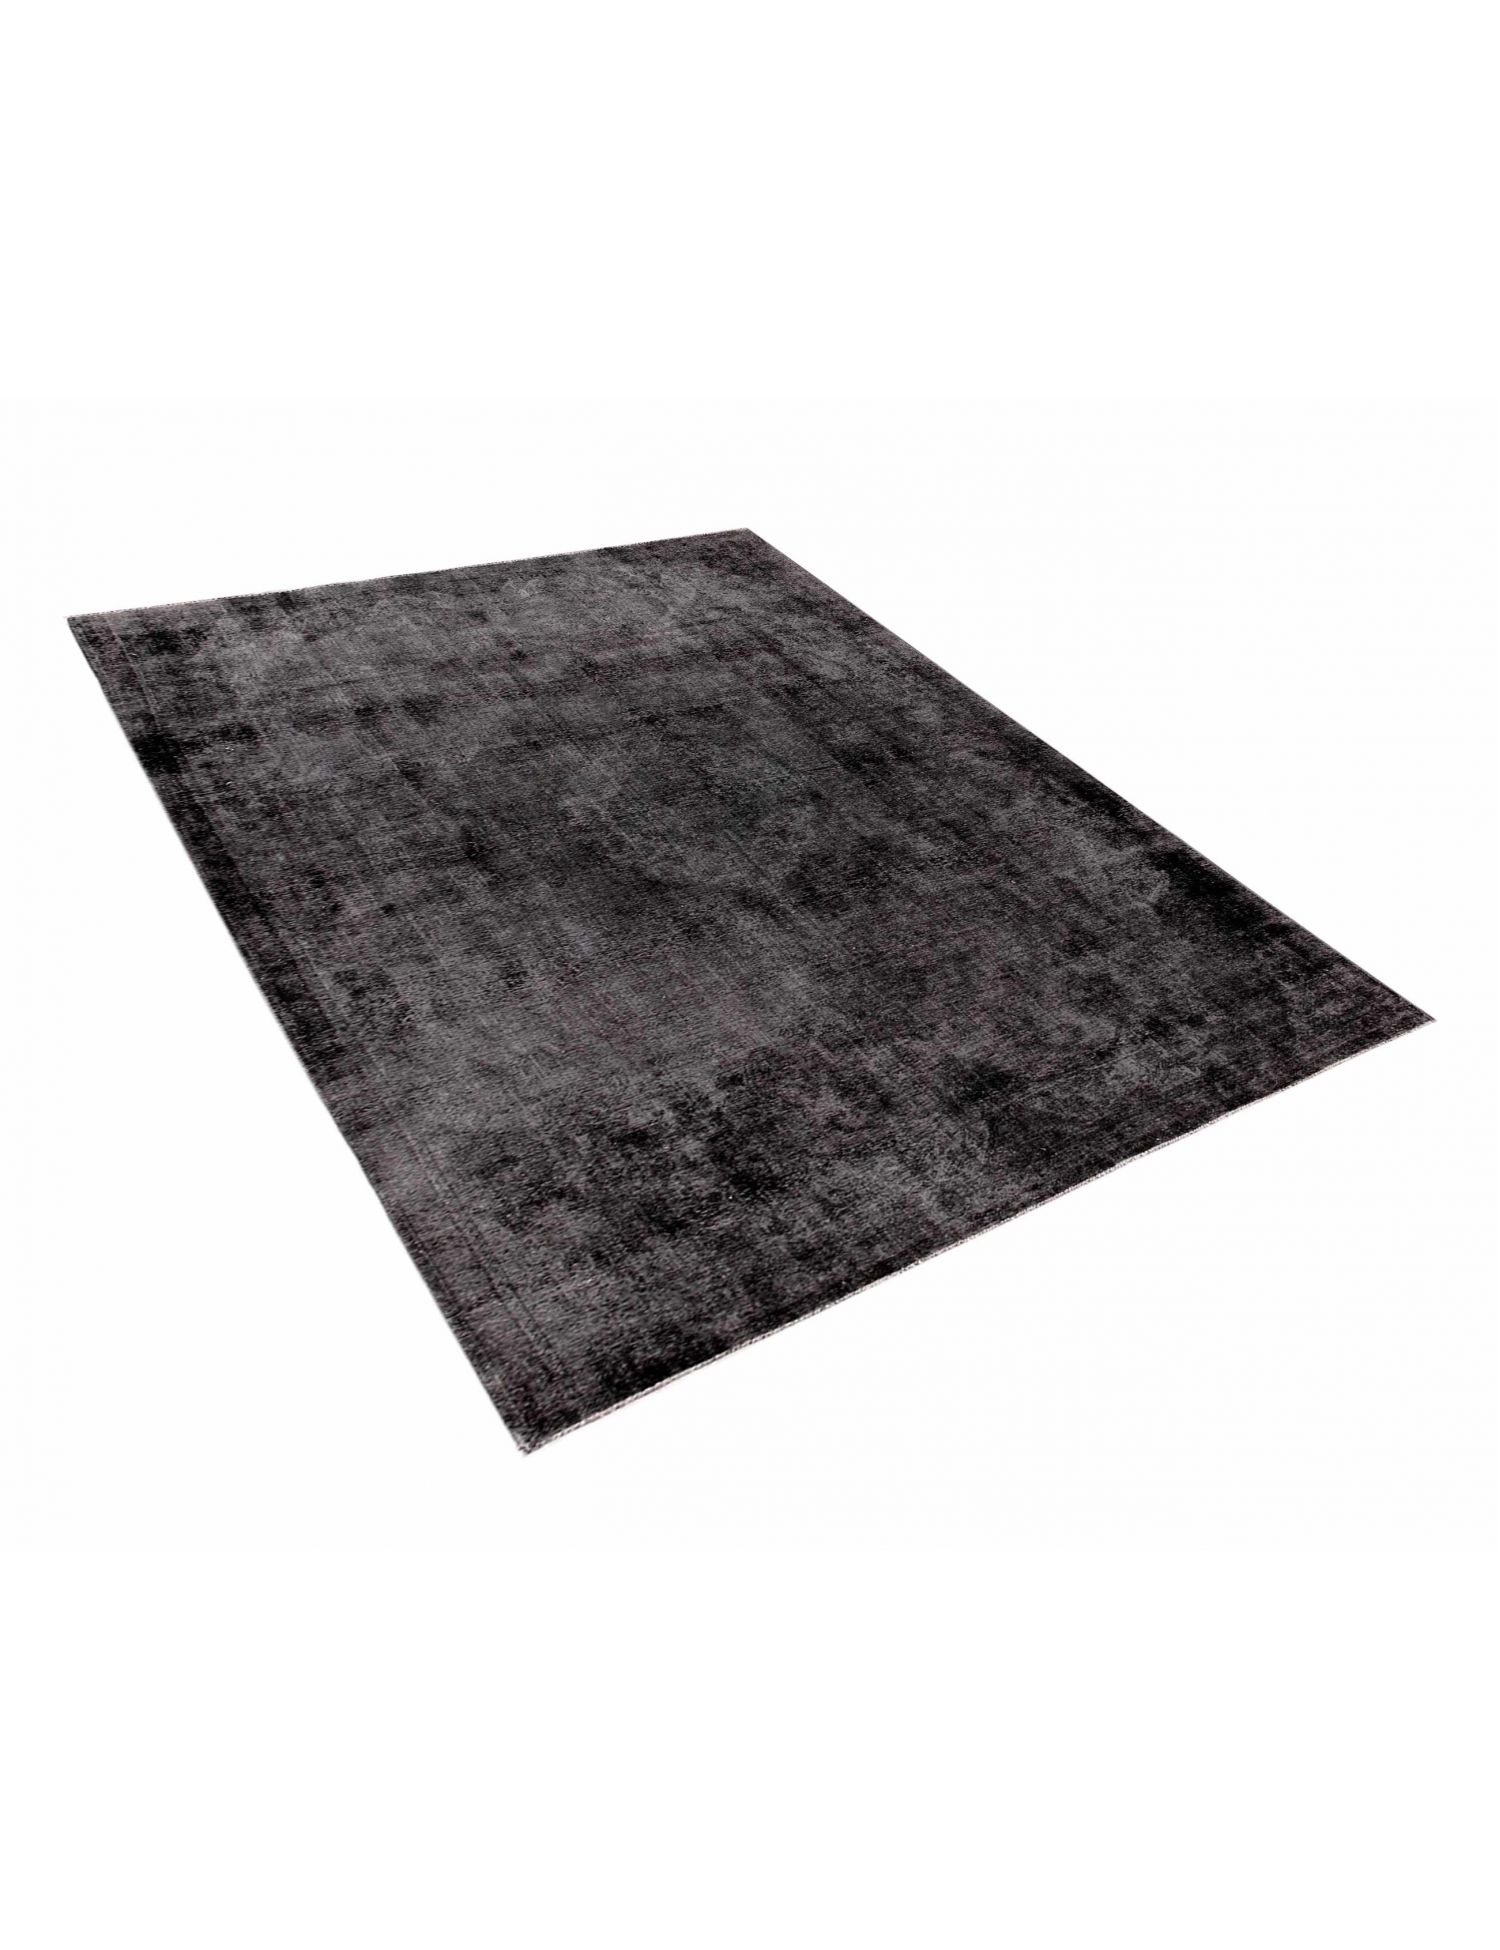 Persian Vintage Carpet  black <br/>402 x 253 cm